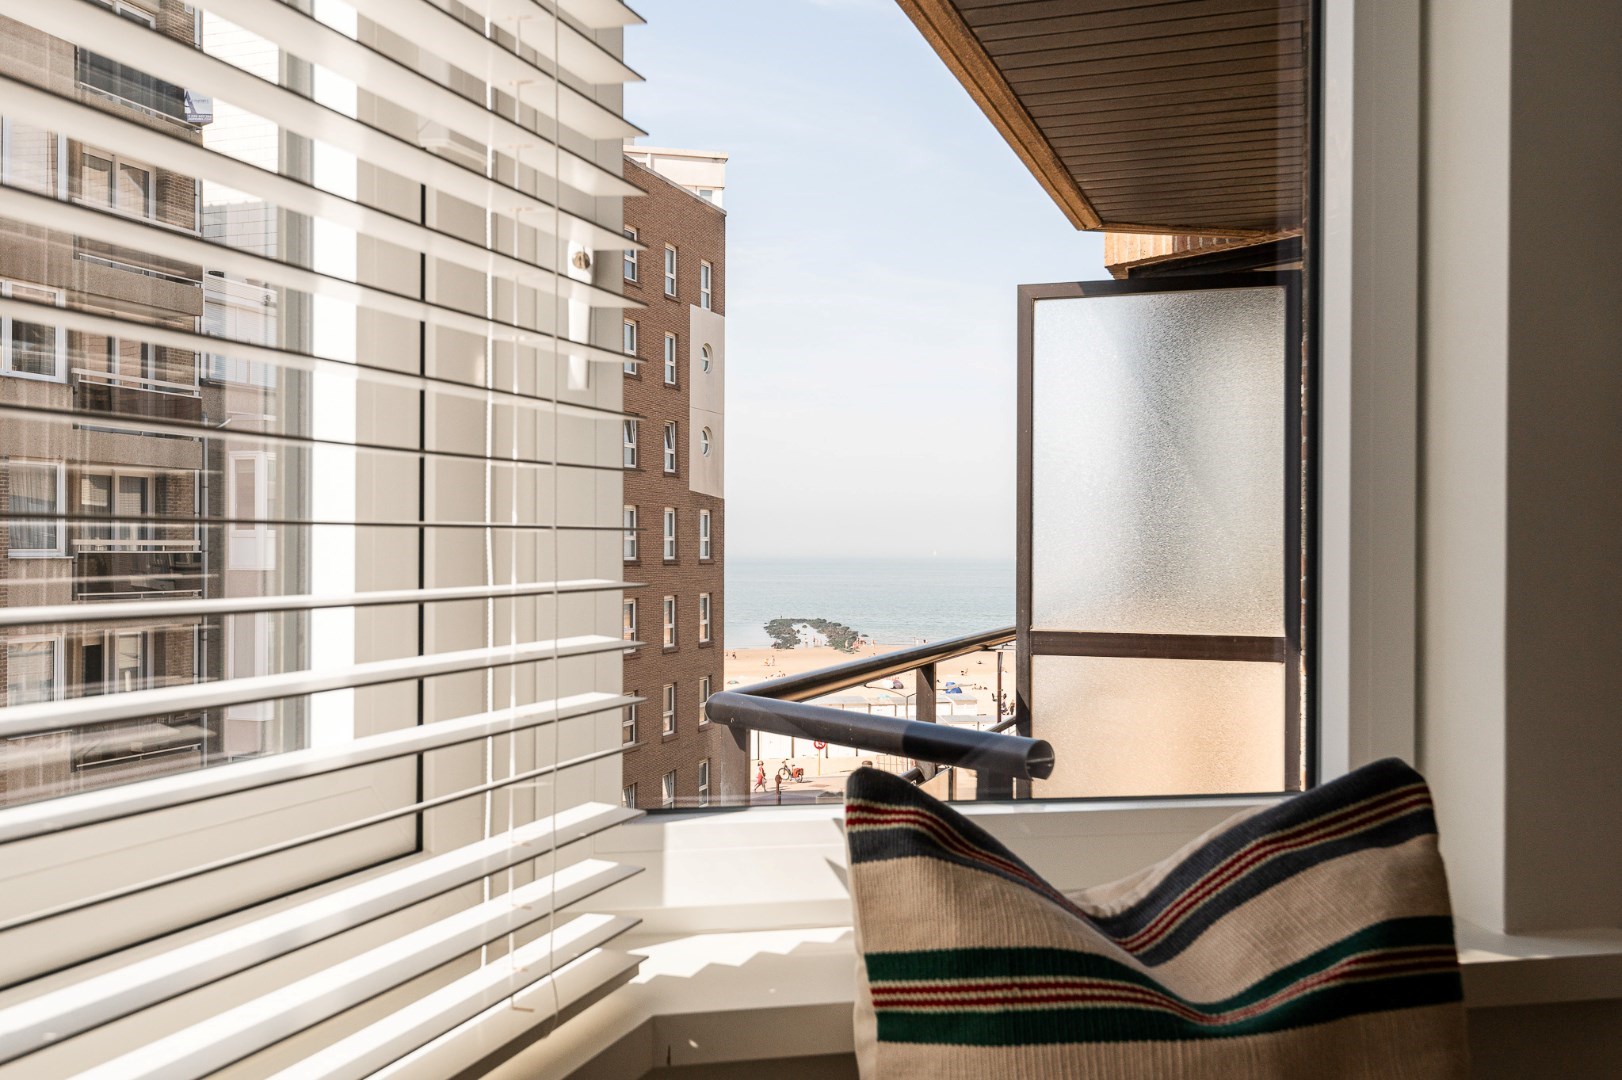 Prachtig gerenoveerd, zonnig appartement met zijdelings zeezicht, centraal gelegen vlakbij het Rubensplein. Mogelijkheid tot aankoop parking in het gebouw. foto 4